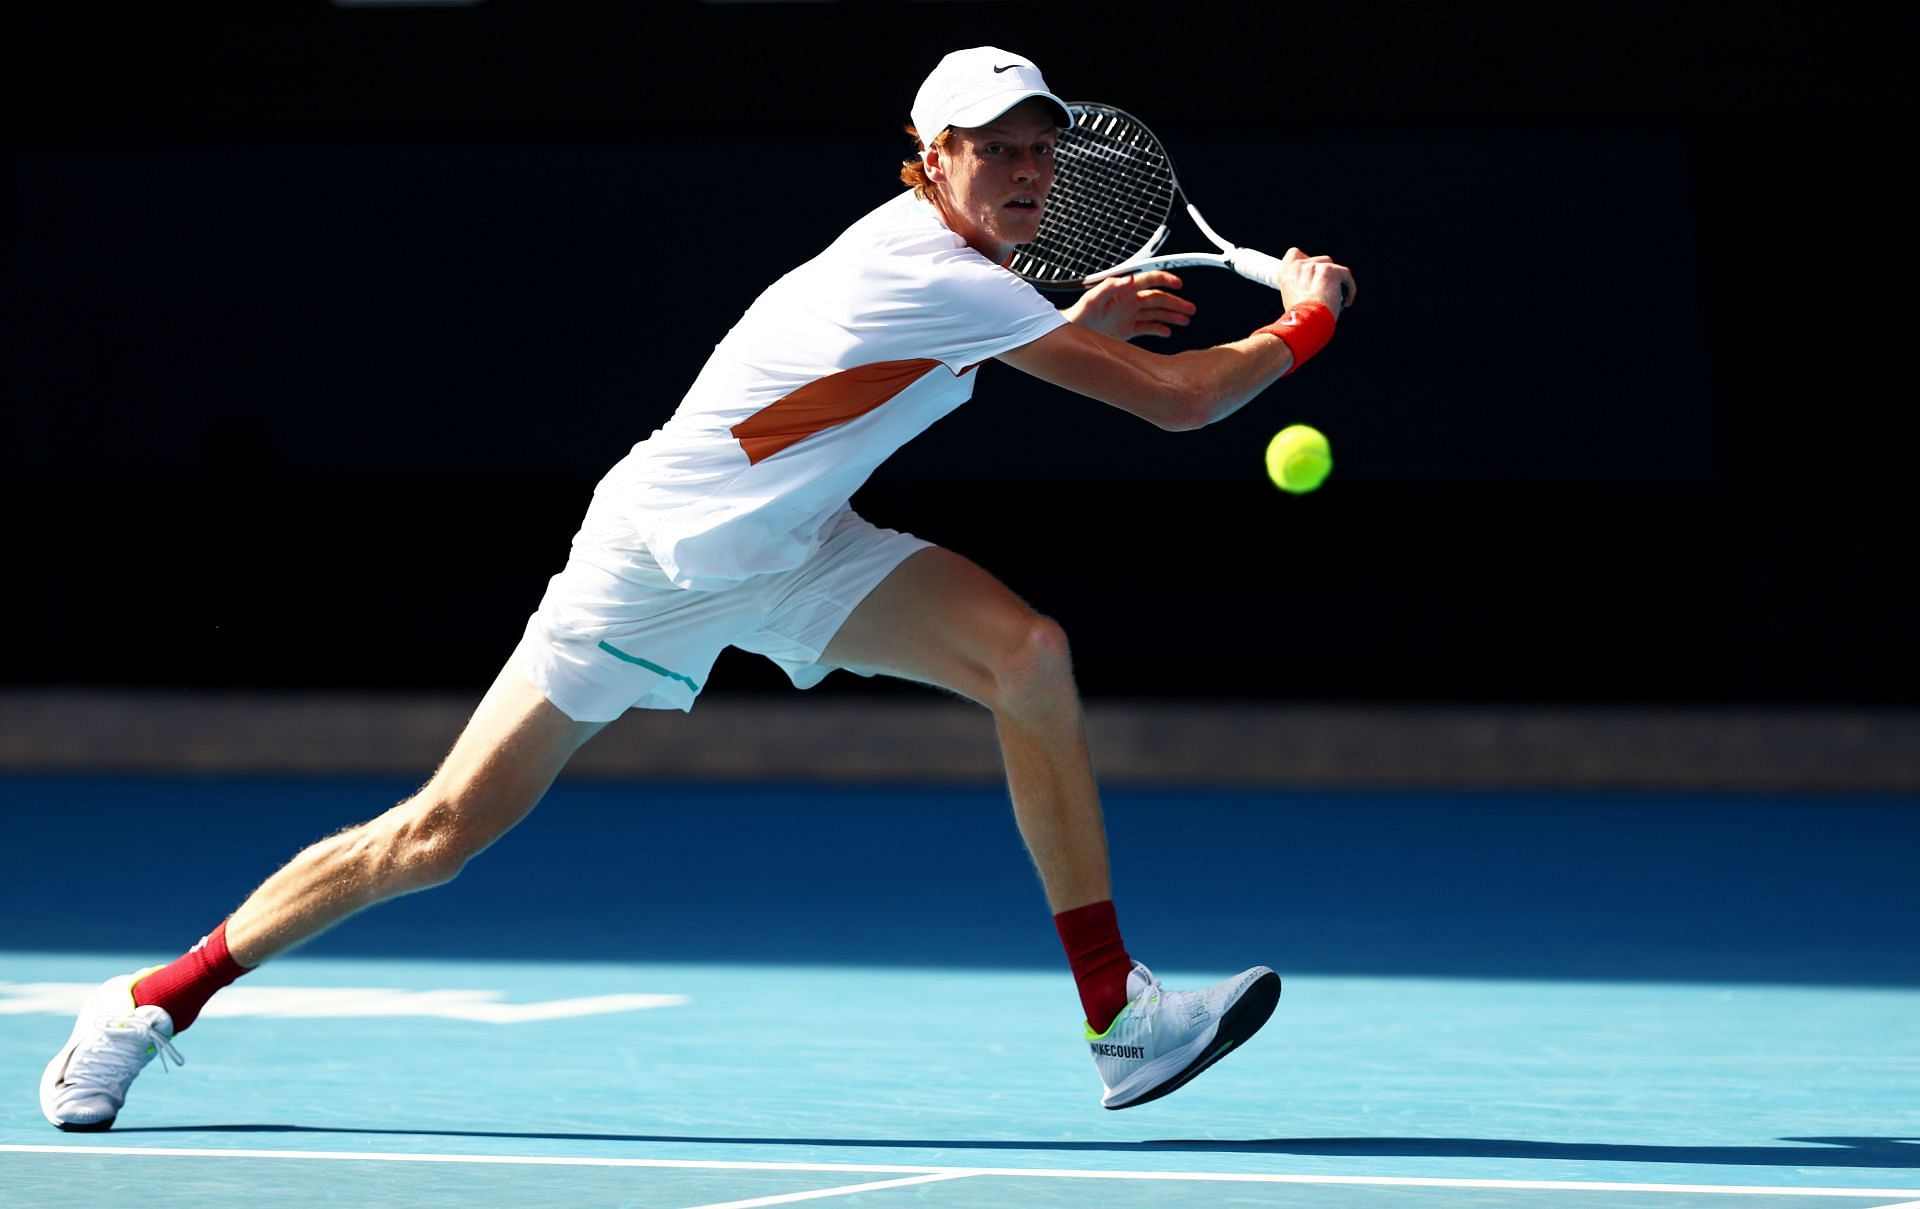 Jannik Sinner at the Australian Open 2022